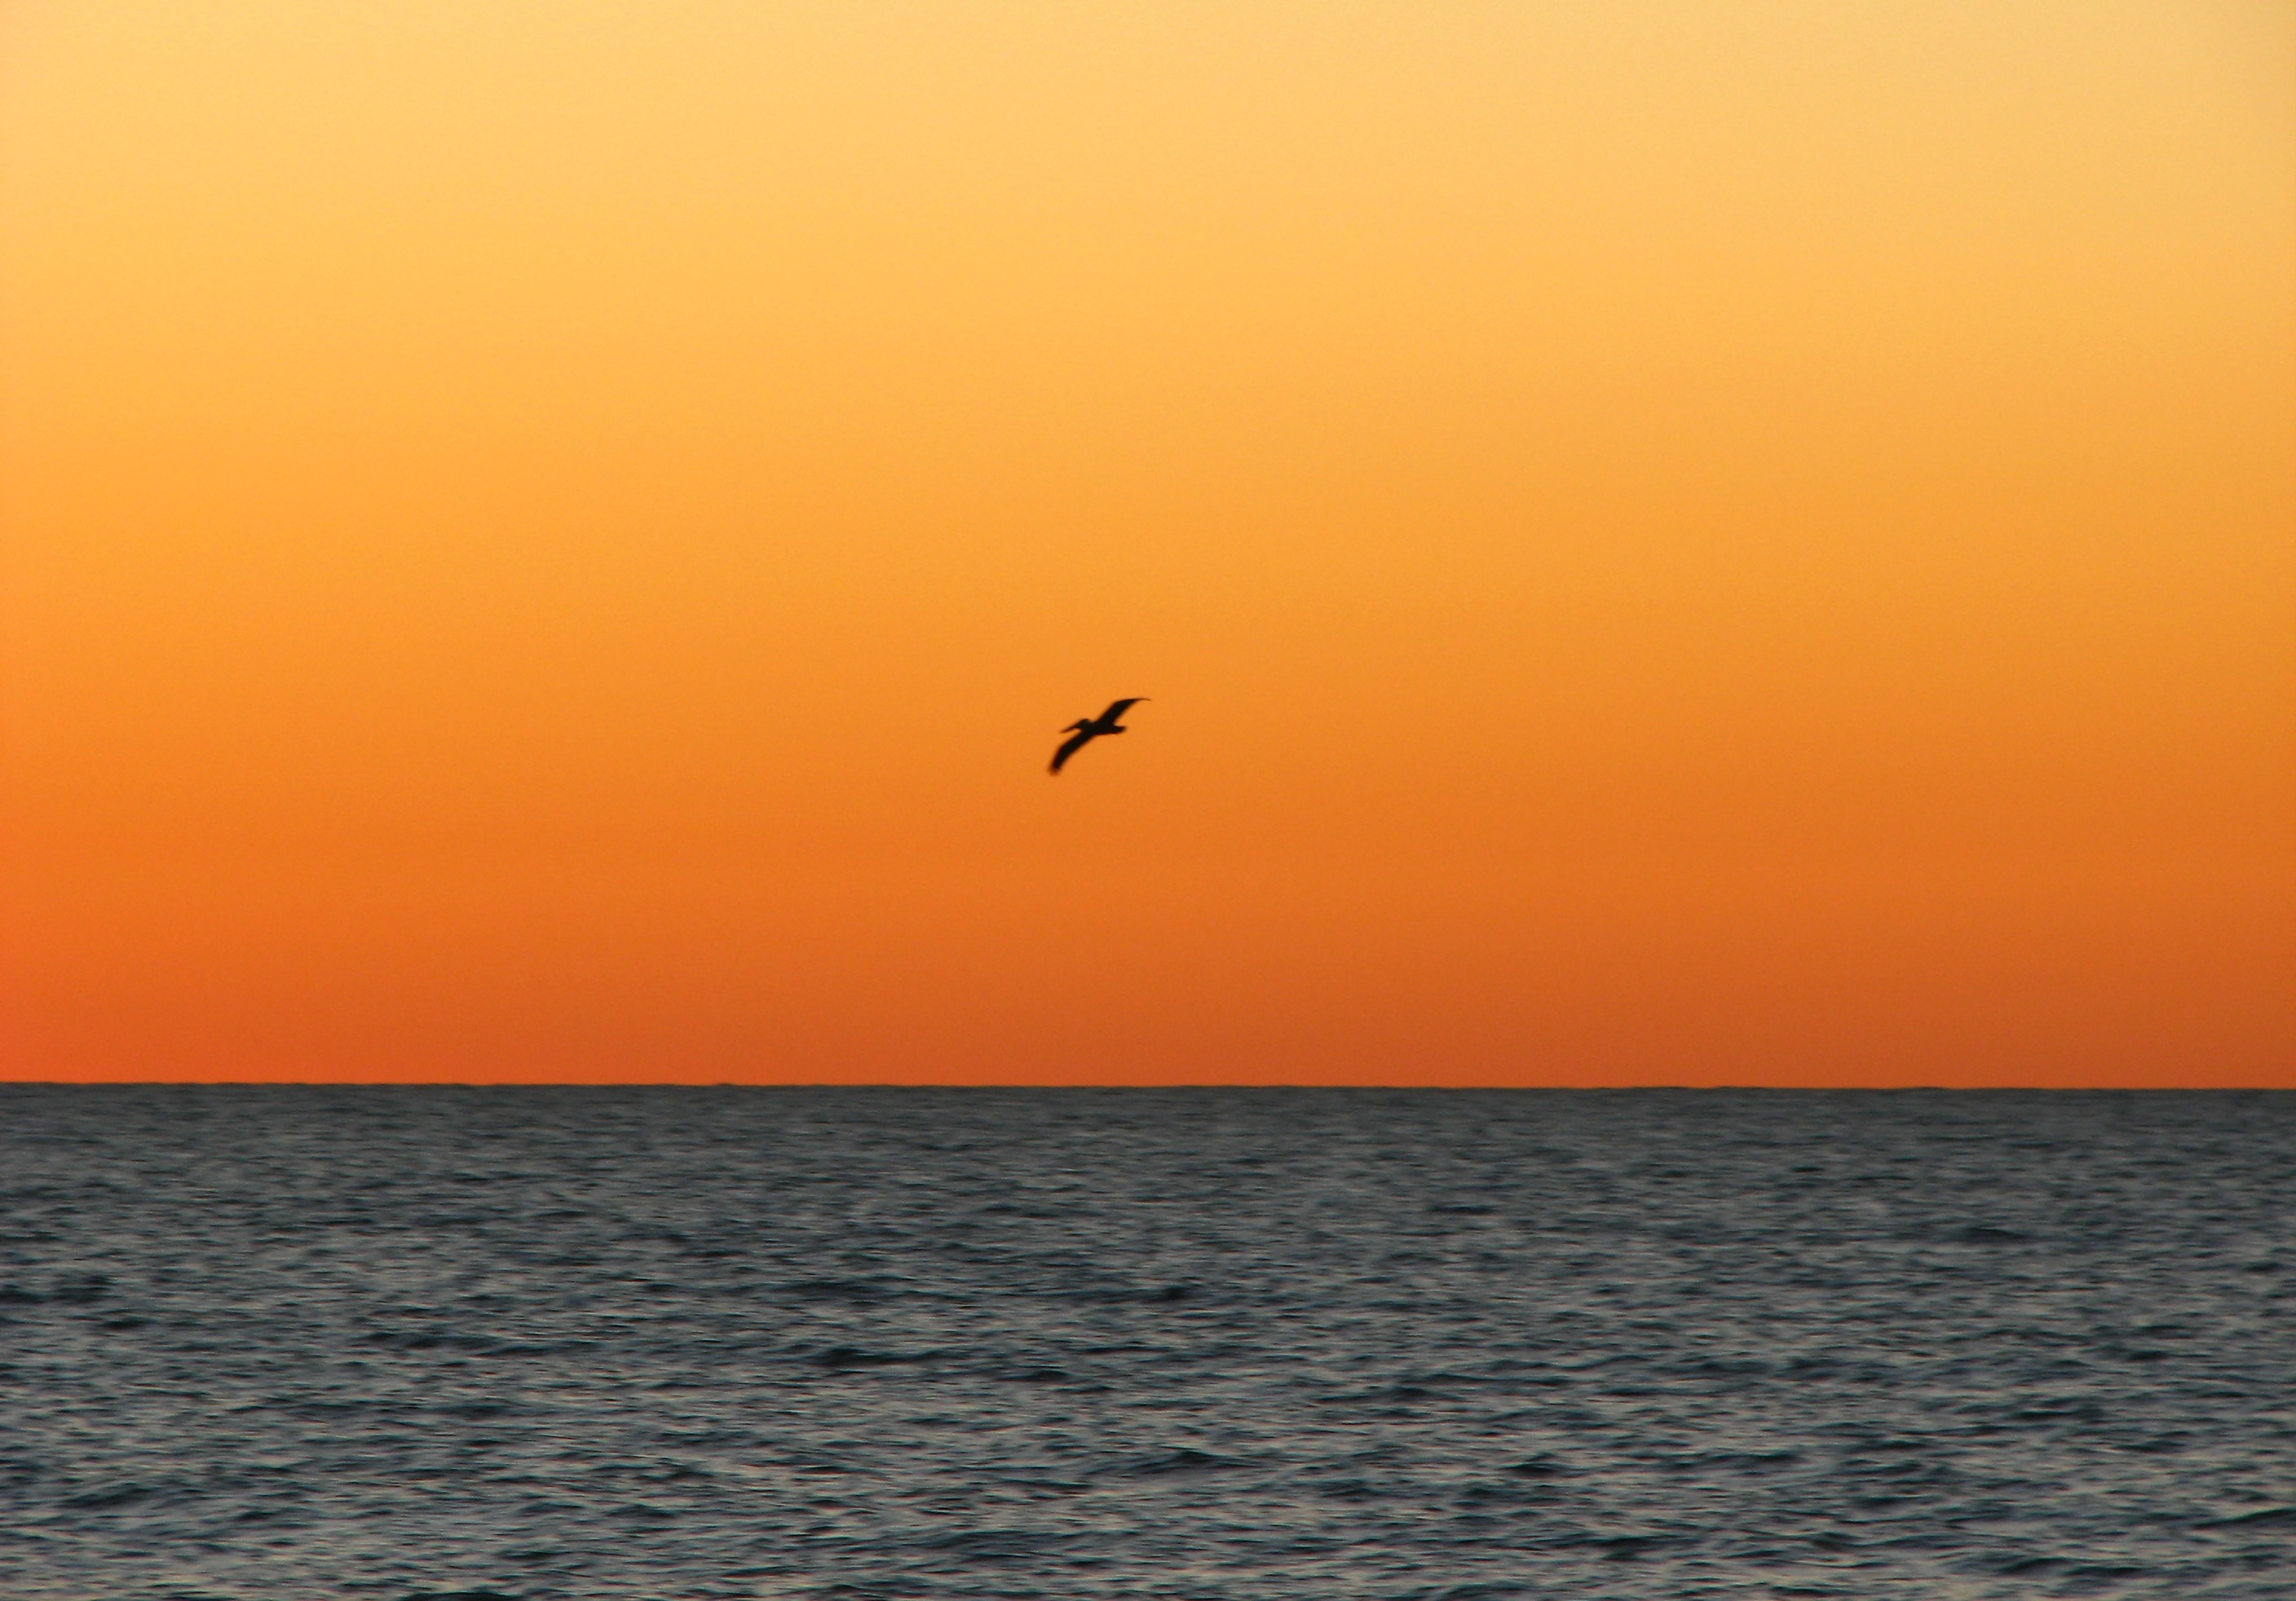 An ocean sunset landscape photo